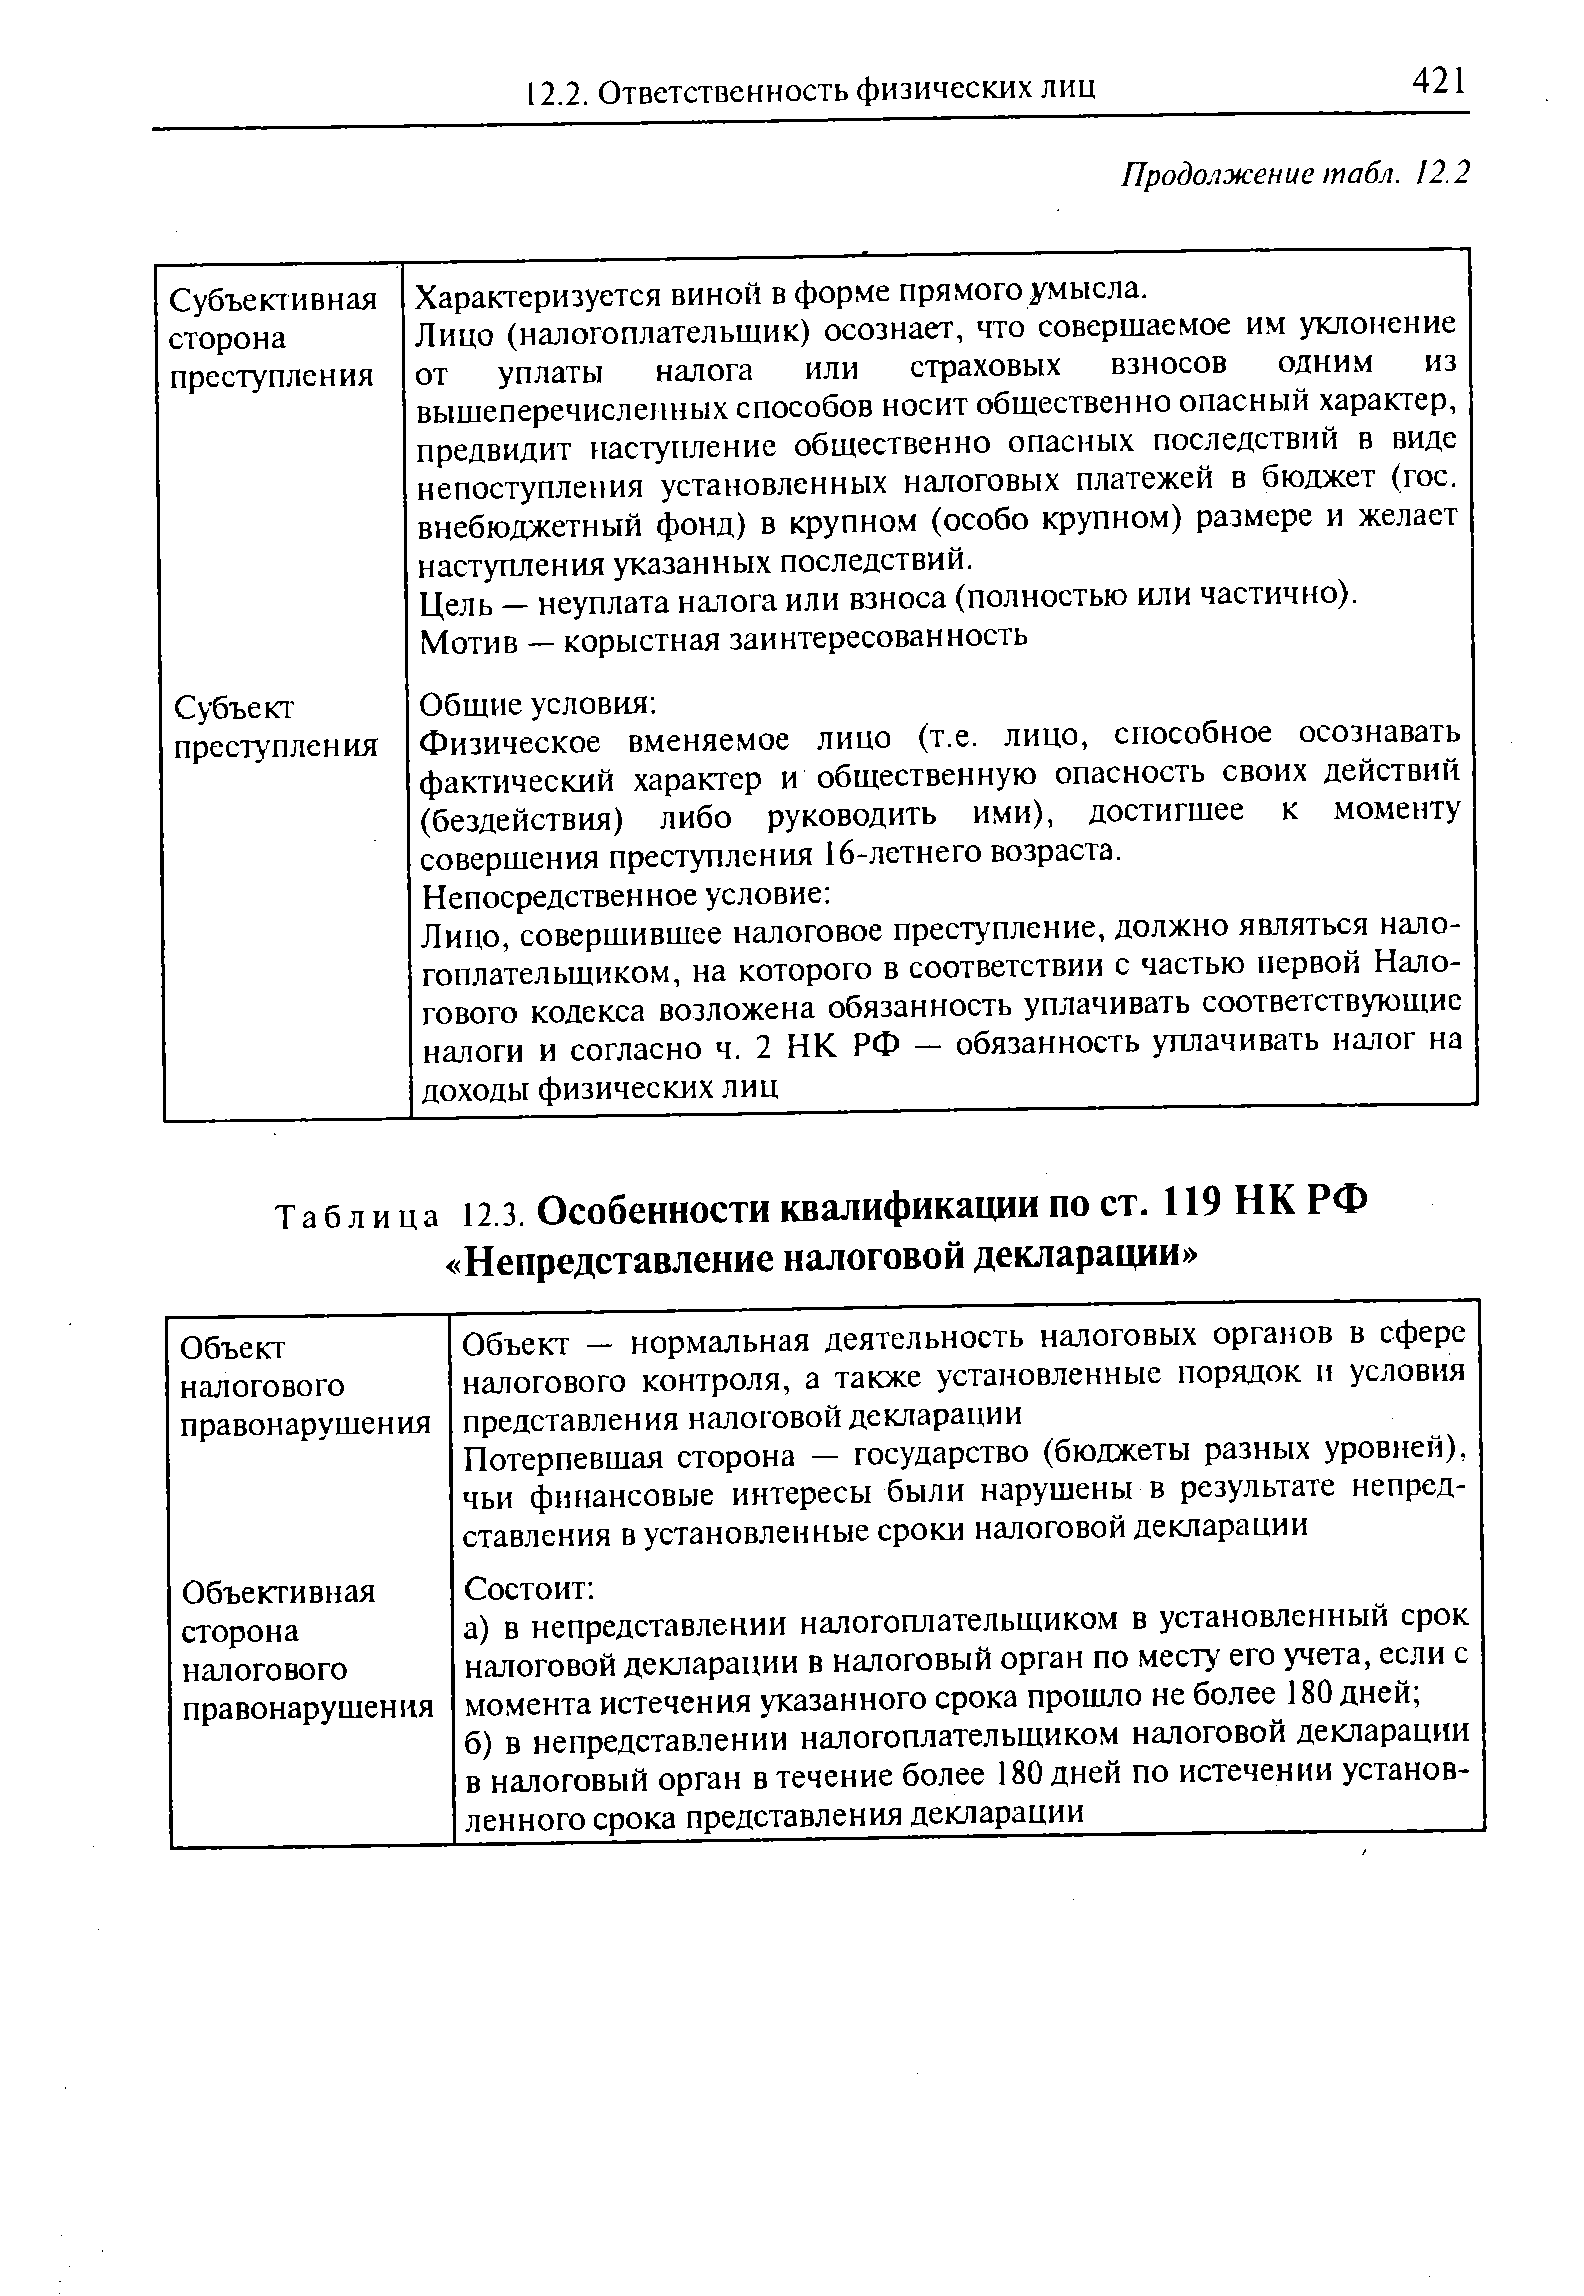 Таблица 12.3. Особенности квалификации по ст. 119НКРФ Непредставление налоговой декларации 
